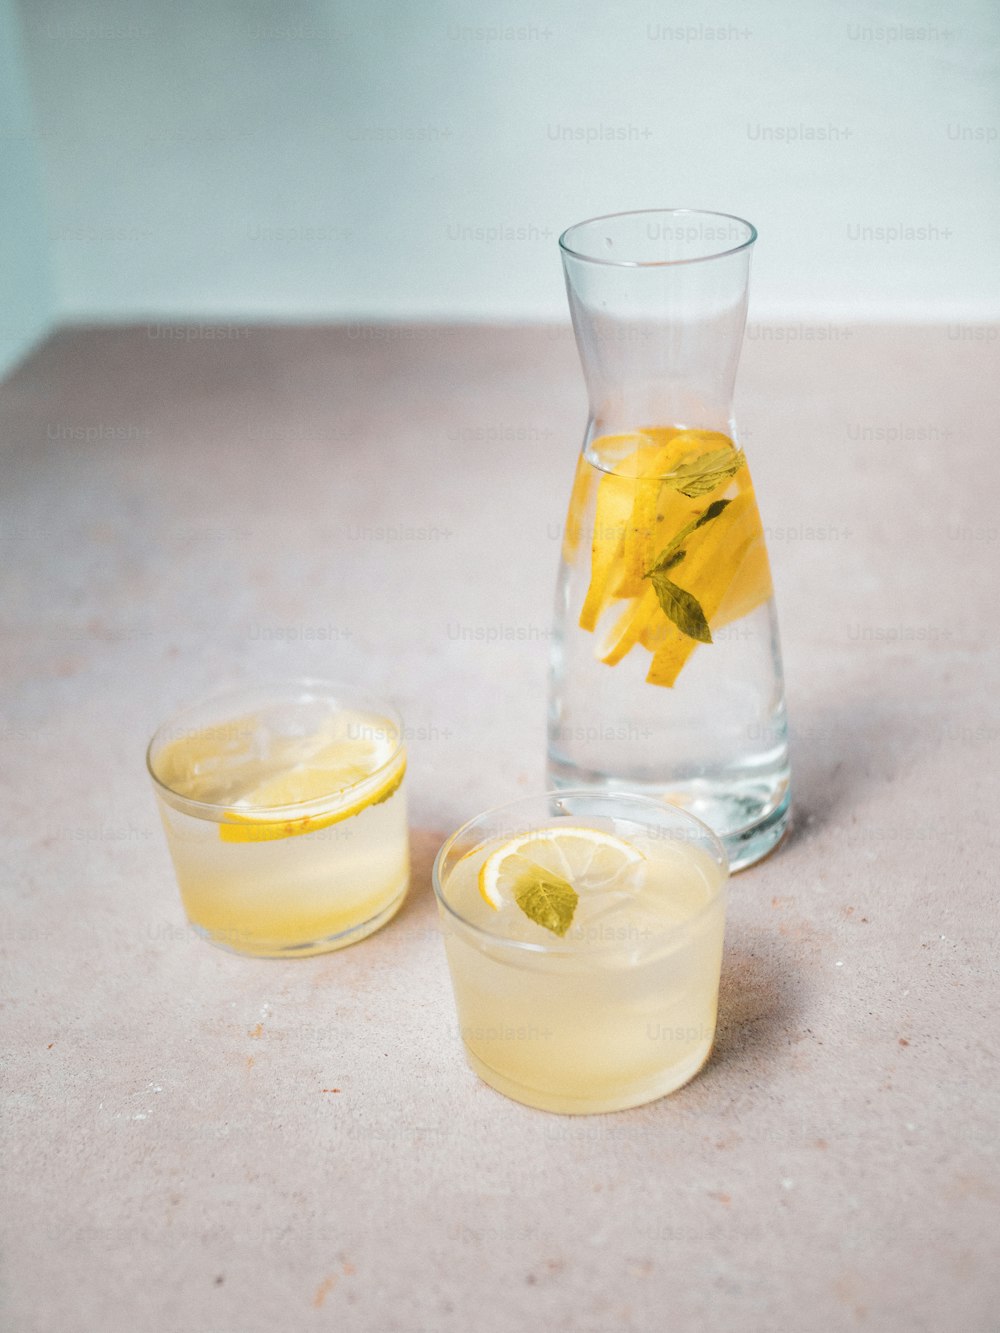 una brocca di limonata accanto a un bicchiere di limonata